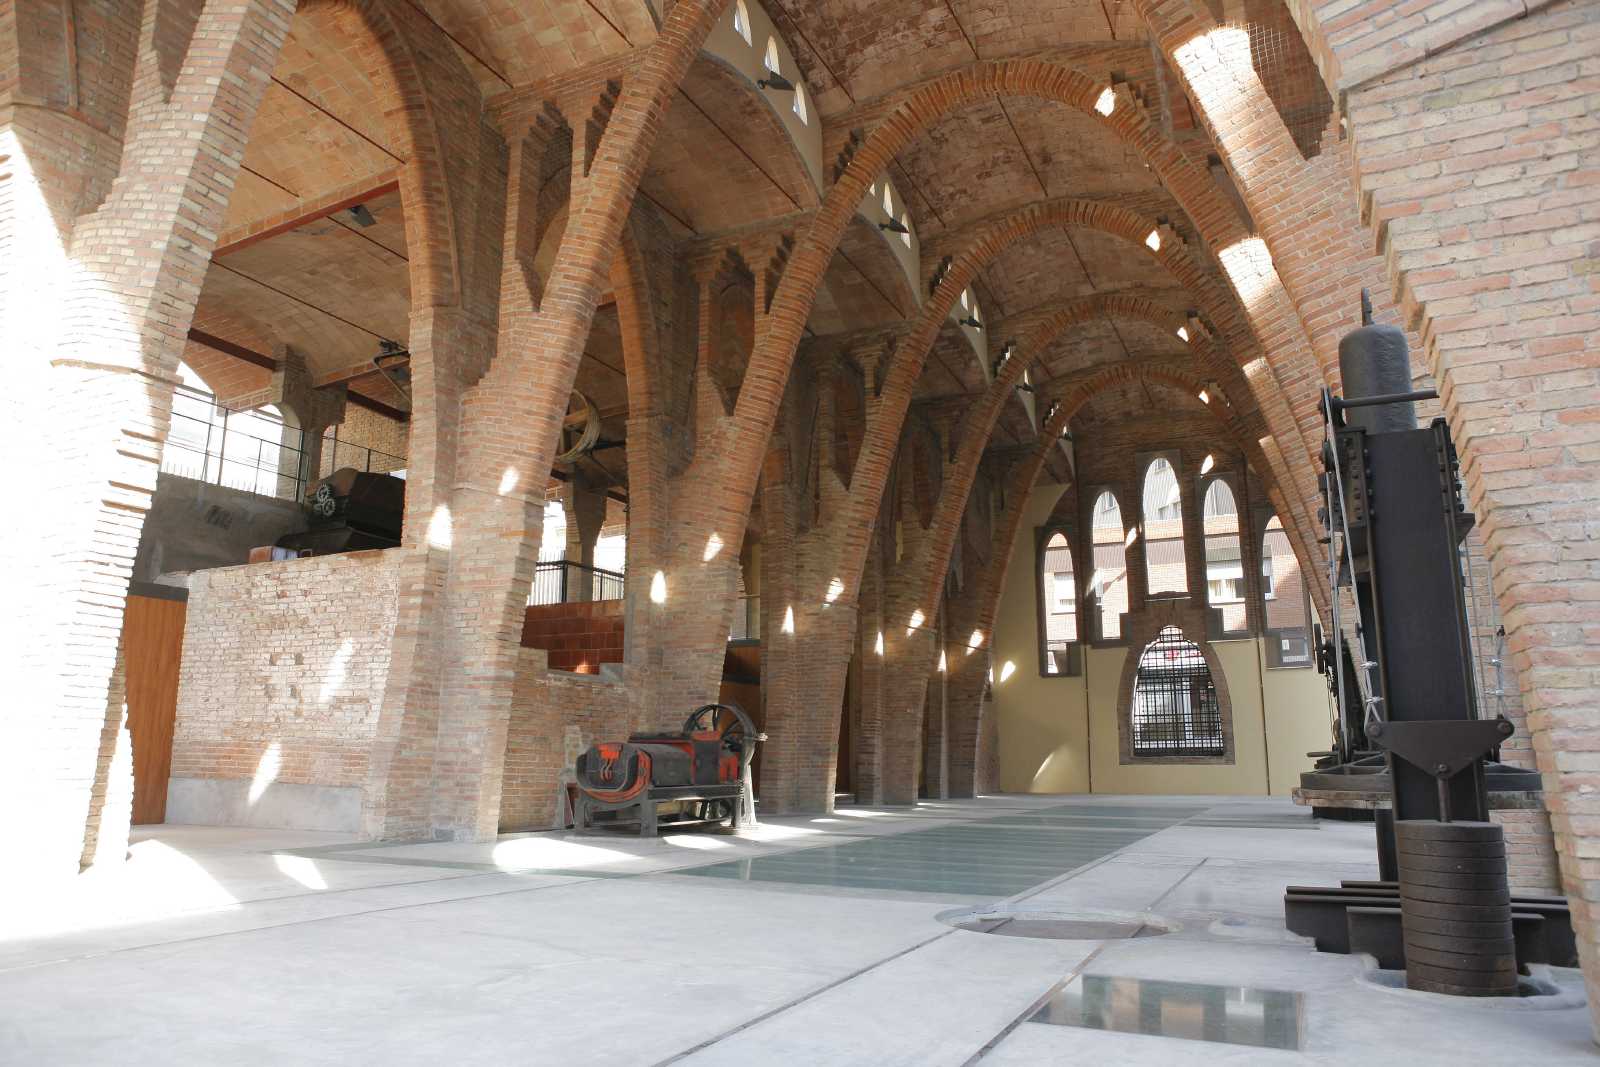 Les activitats a Sant Cugat seran el dia 17 a l'entorn del Celler Modernista. FOTO: Artur Ribera